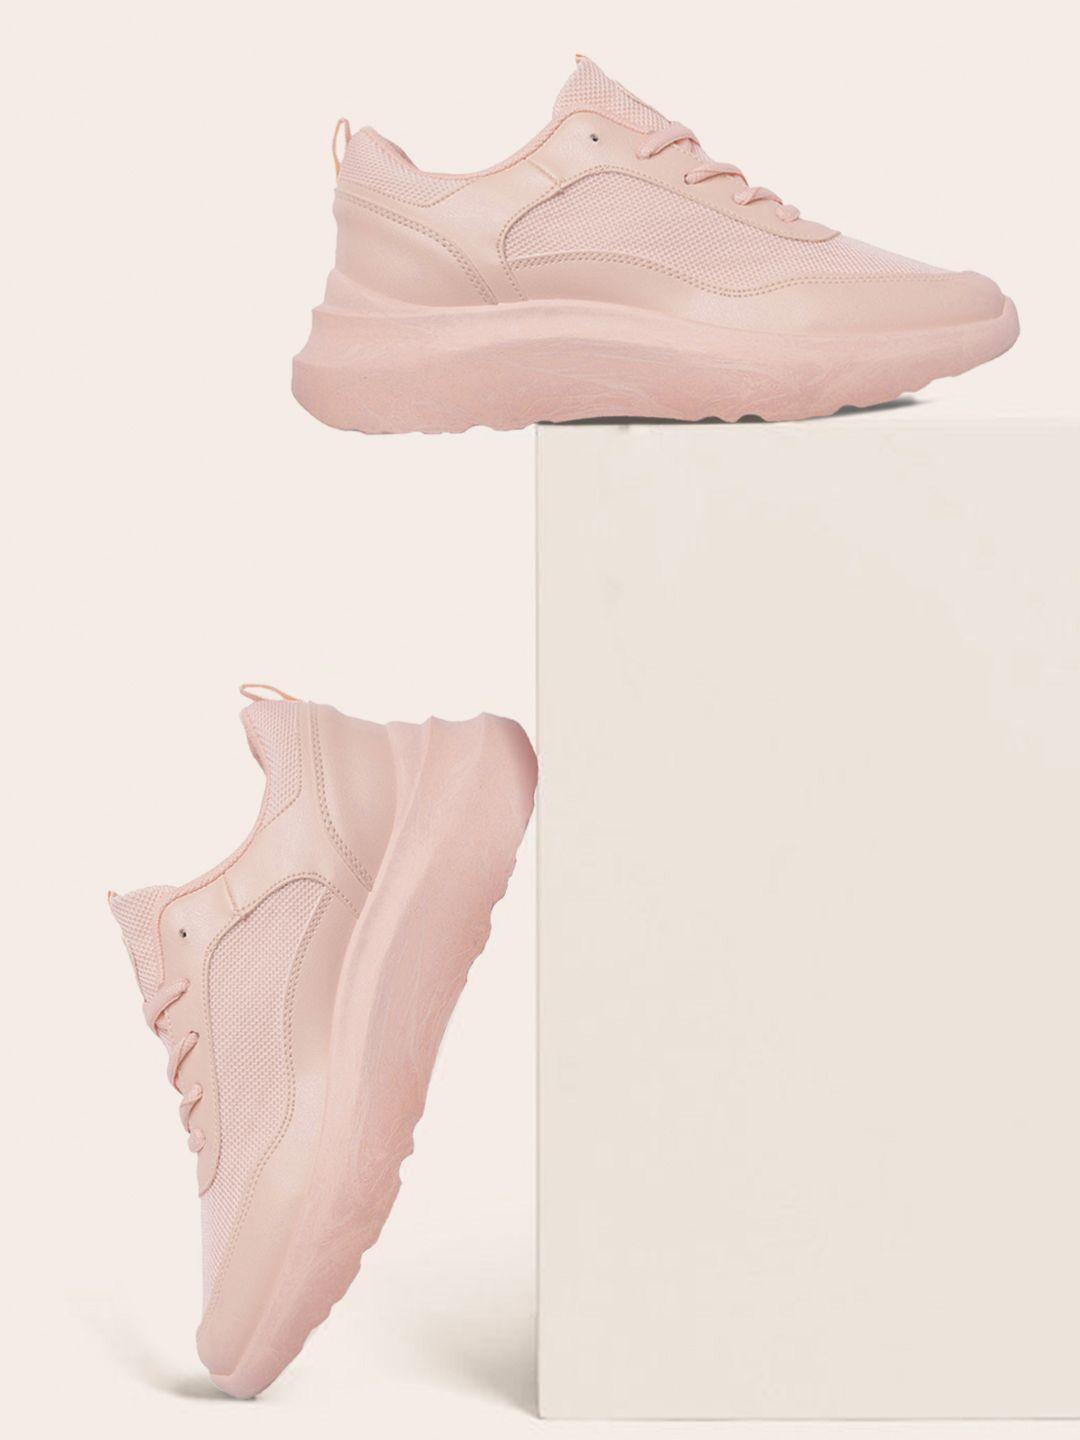 mast & harbour women pink woven design sneakers